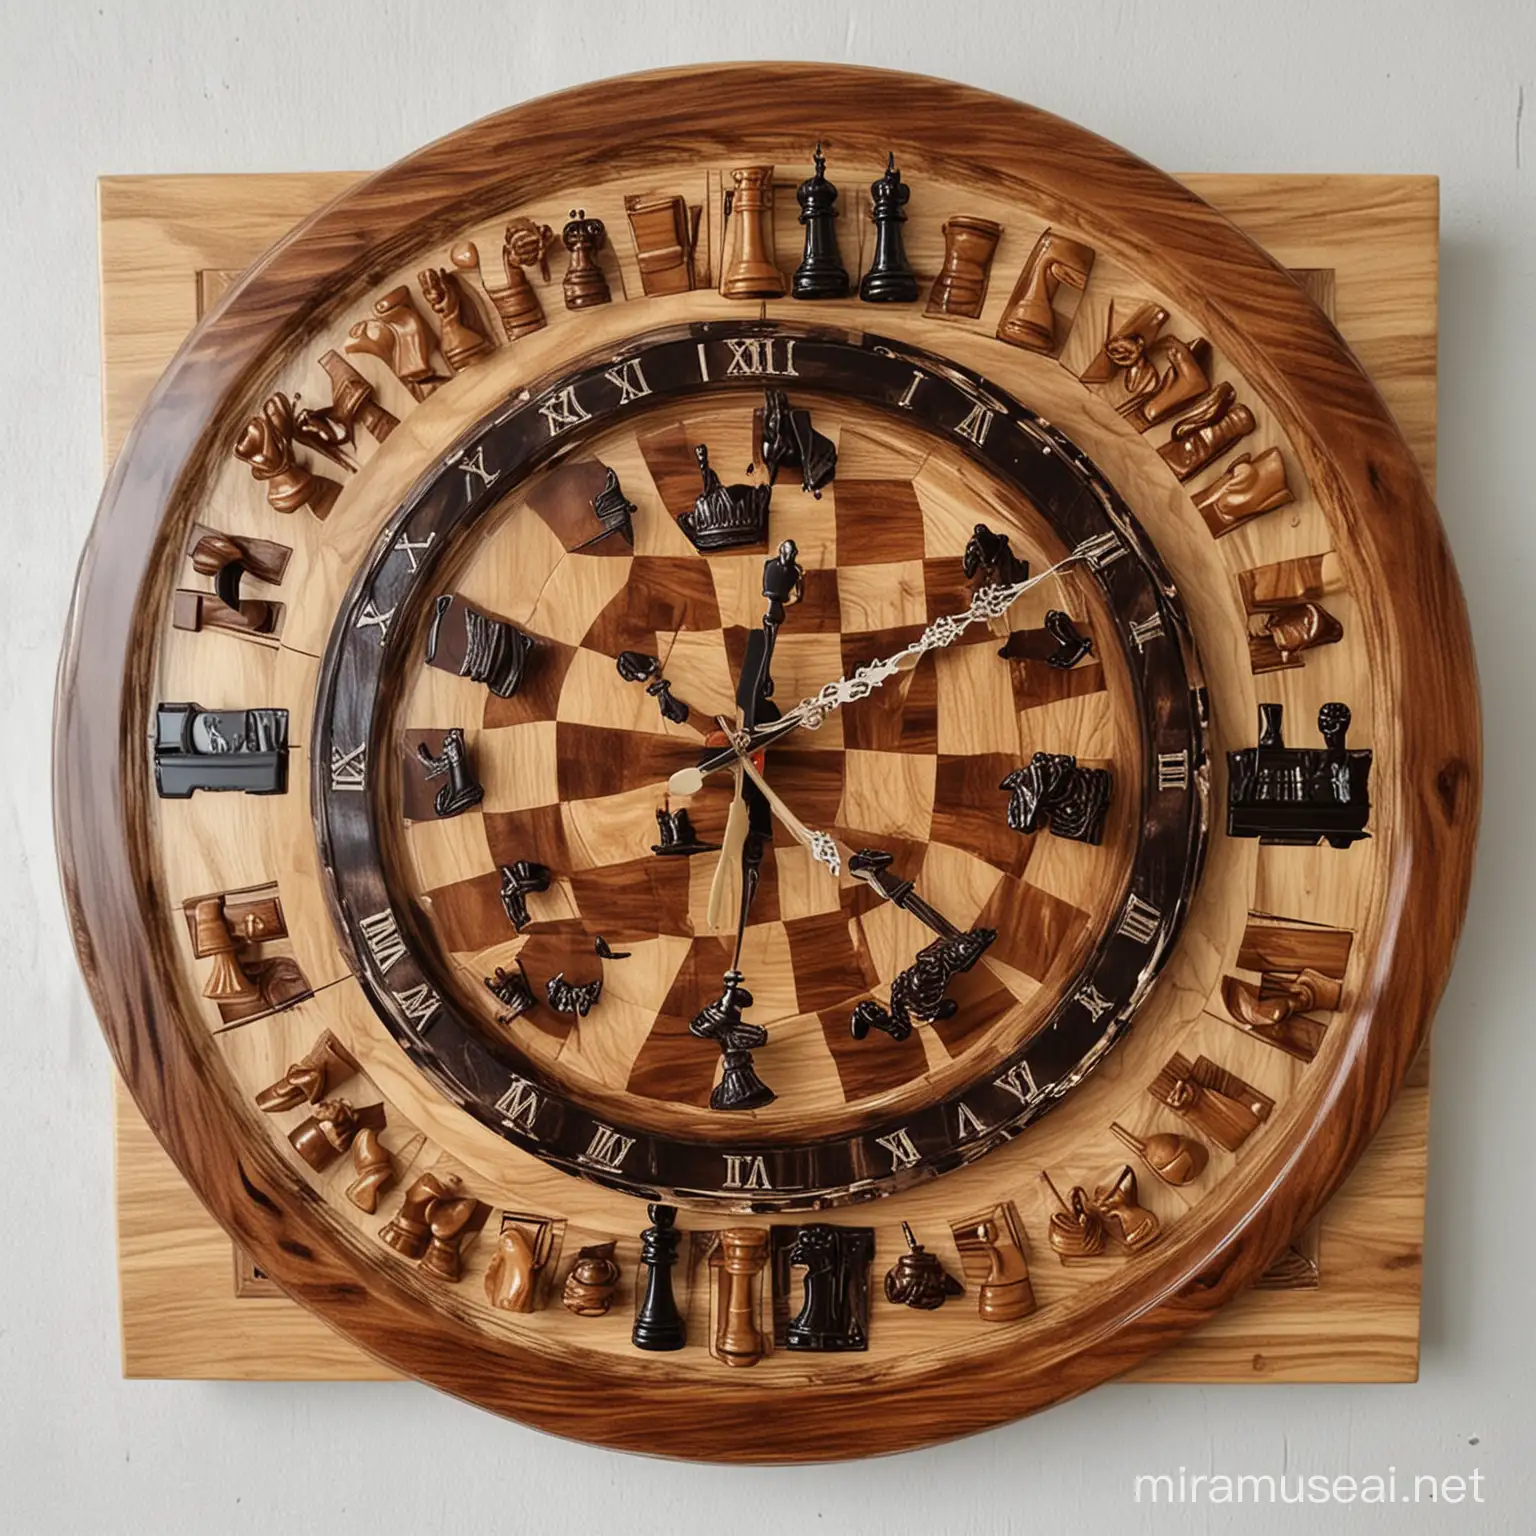 Stylish Epoxy Resin Wall Clock and Chess Set